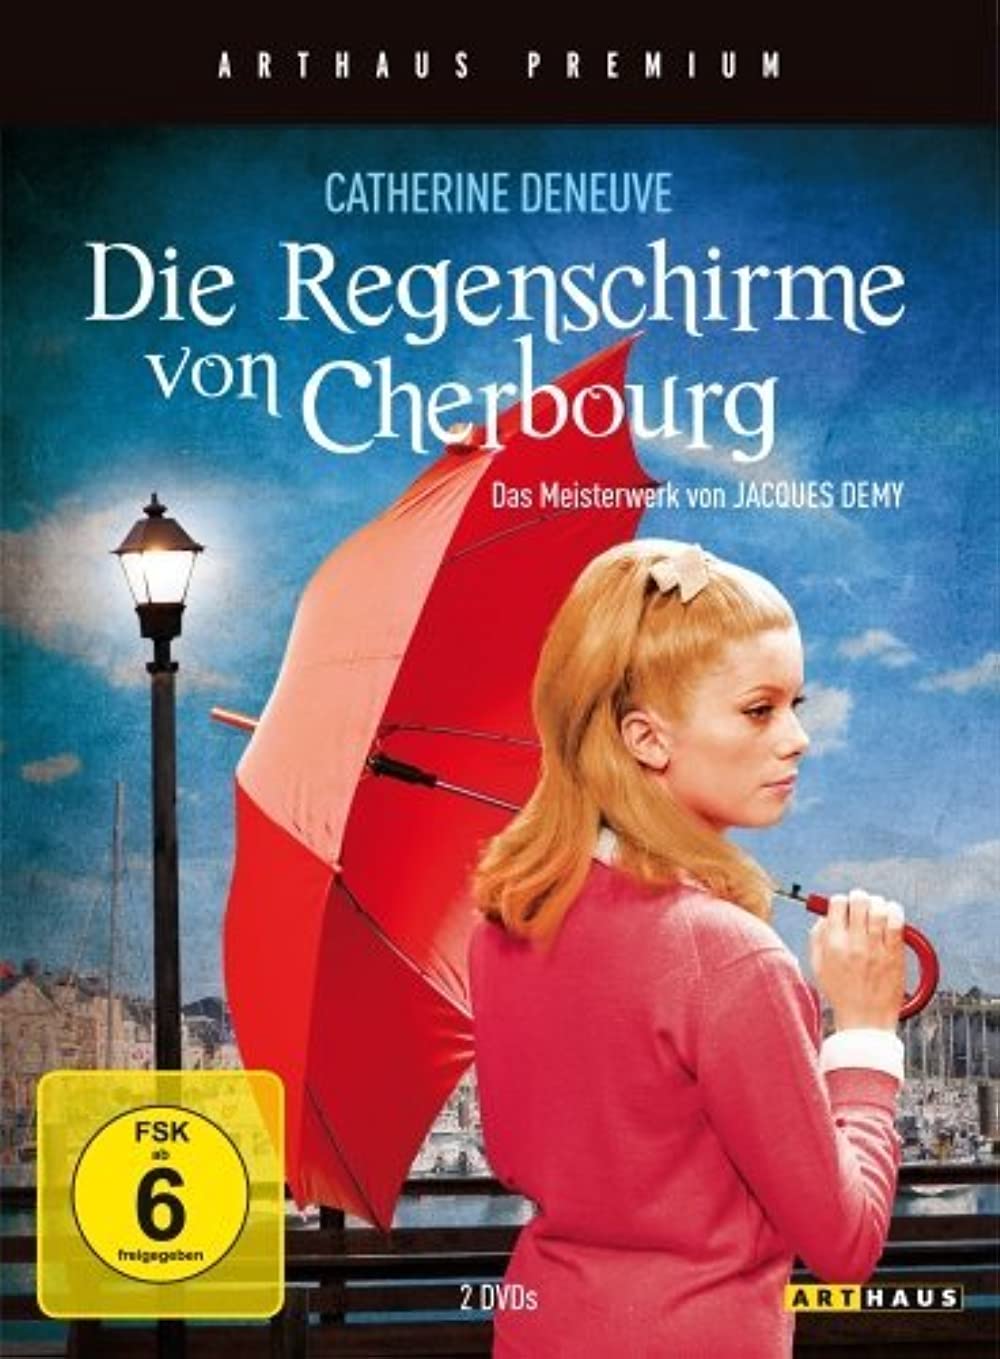 Filmbeschreibung zu Die Regenschirme von Cherbourg